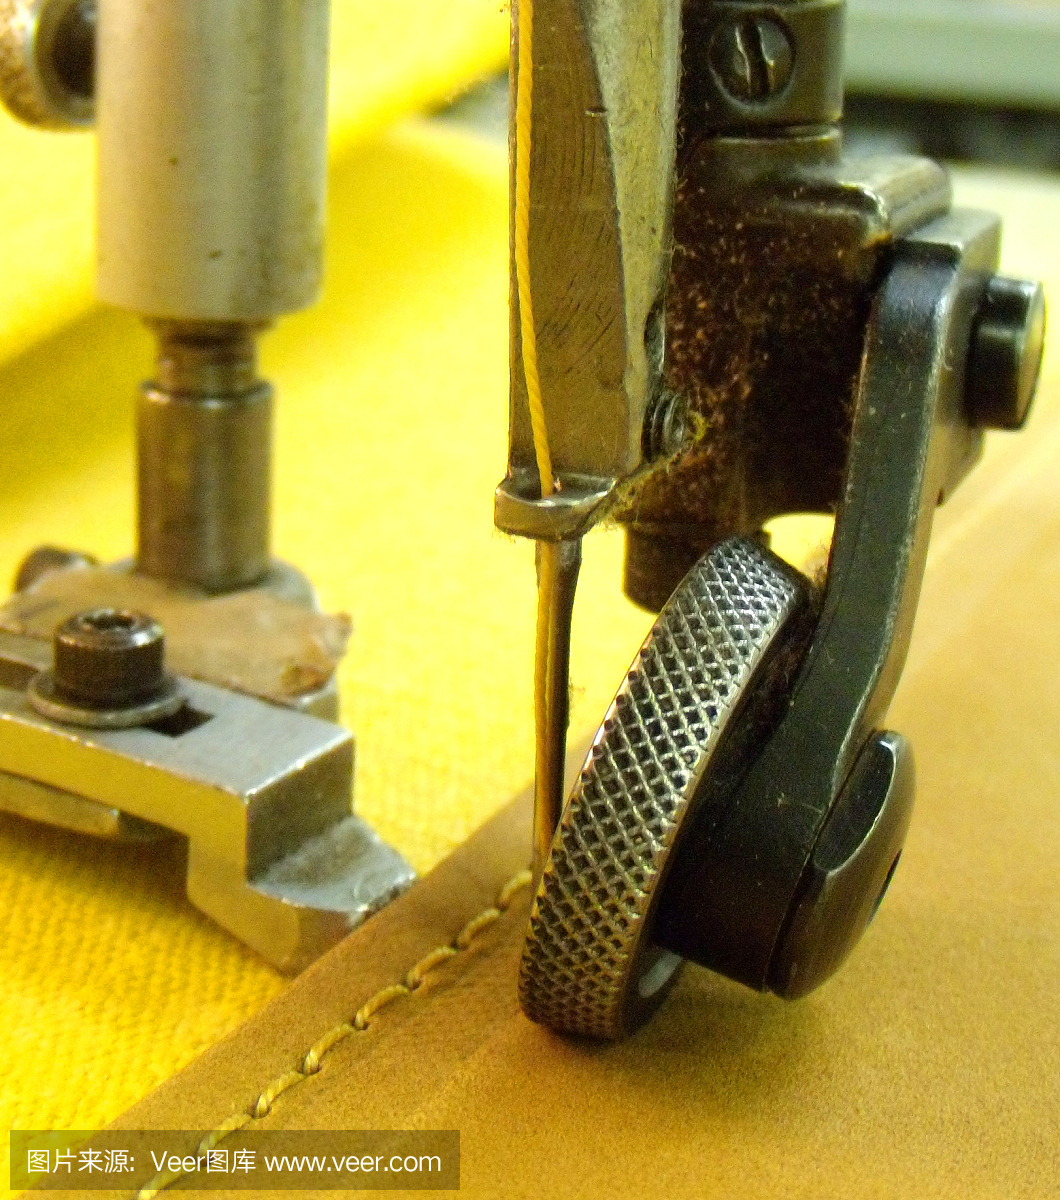 缝纫机针缝黄色织物/皮革材料的图像